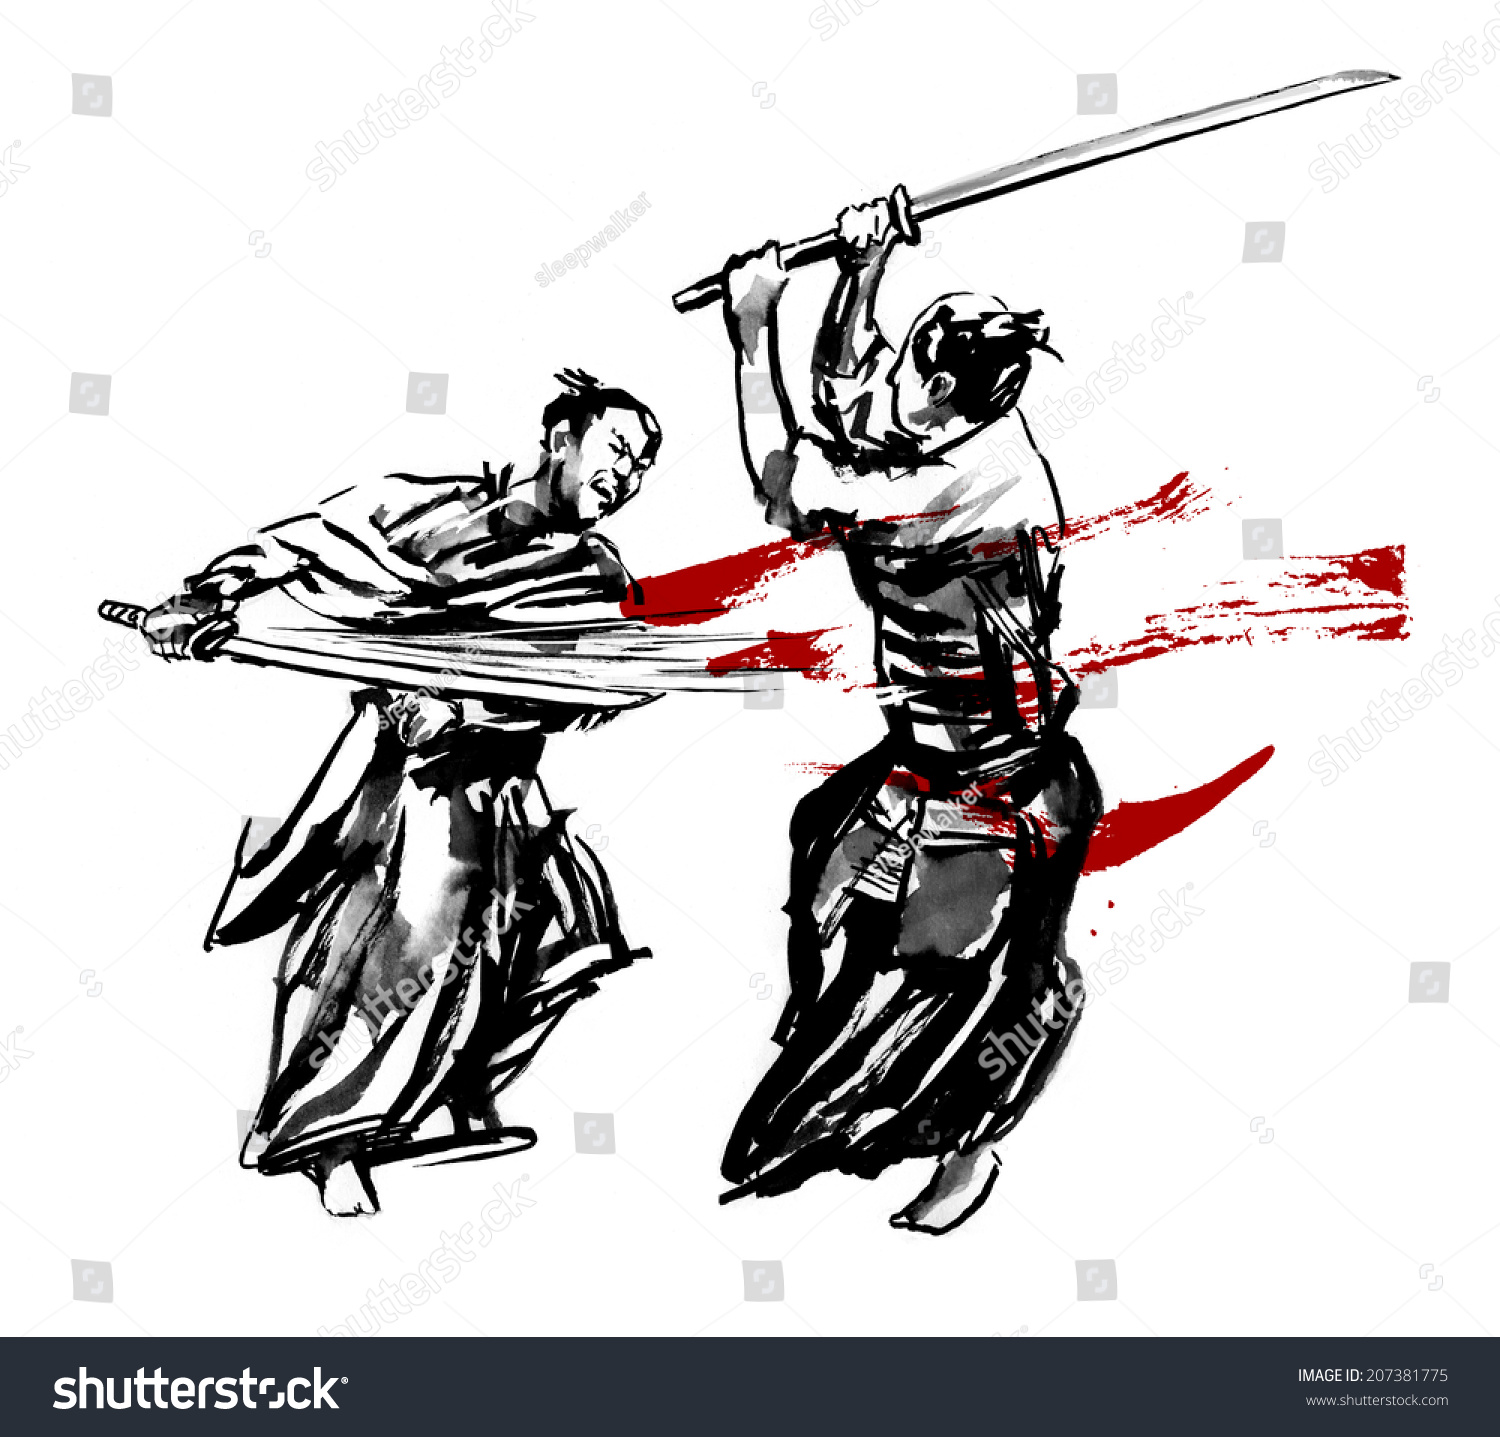 Japanese fight fan image